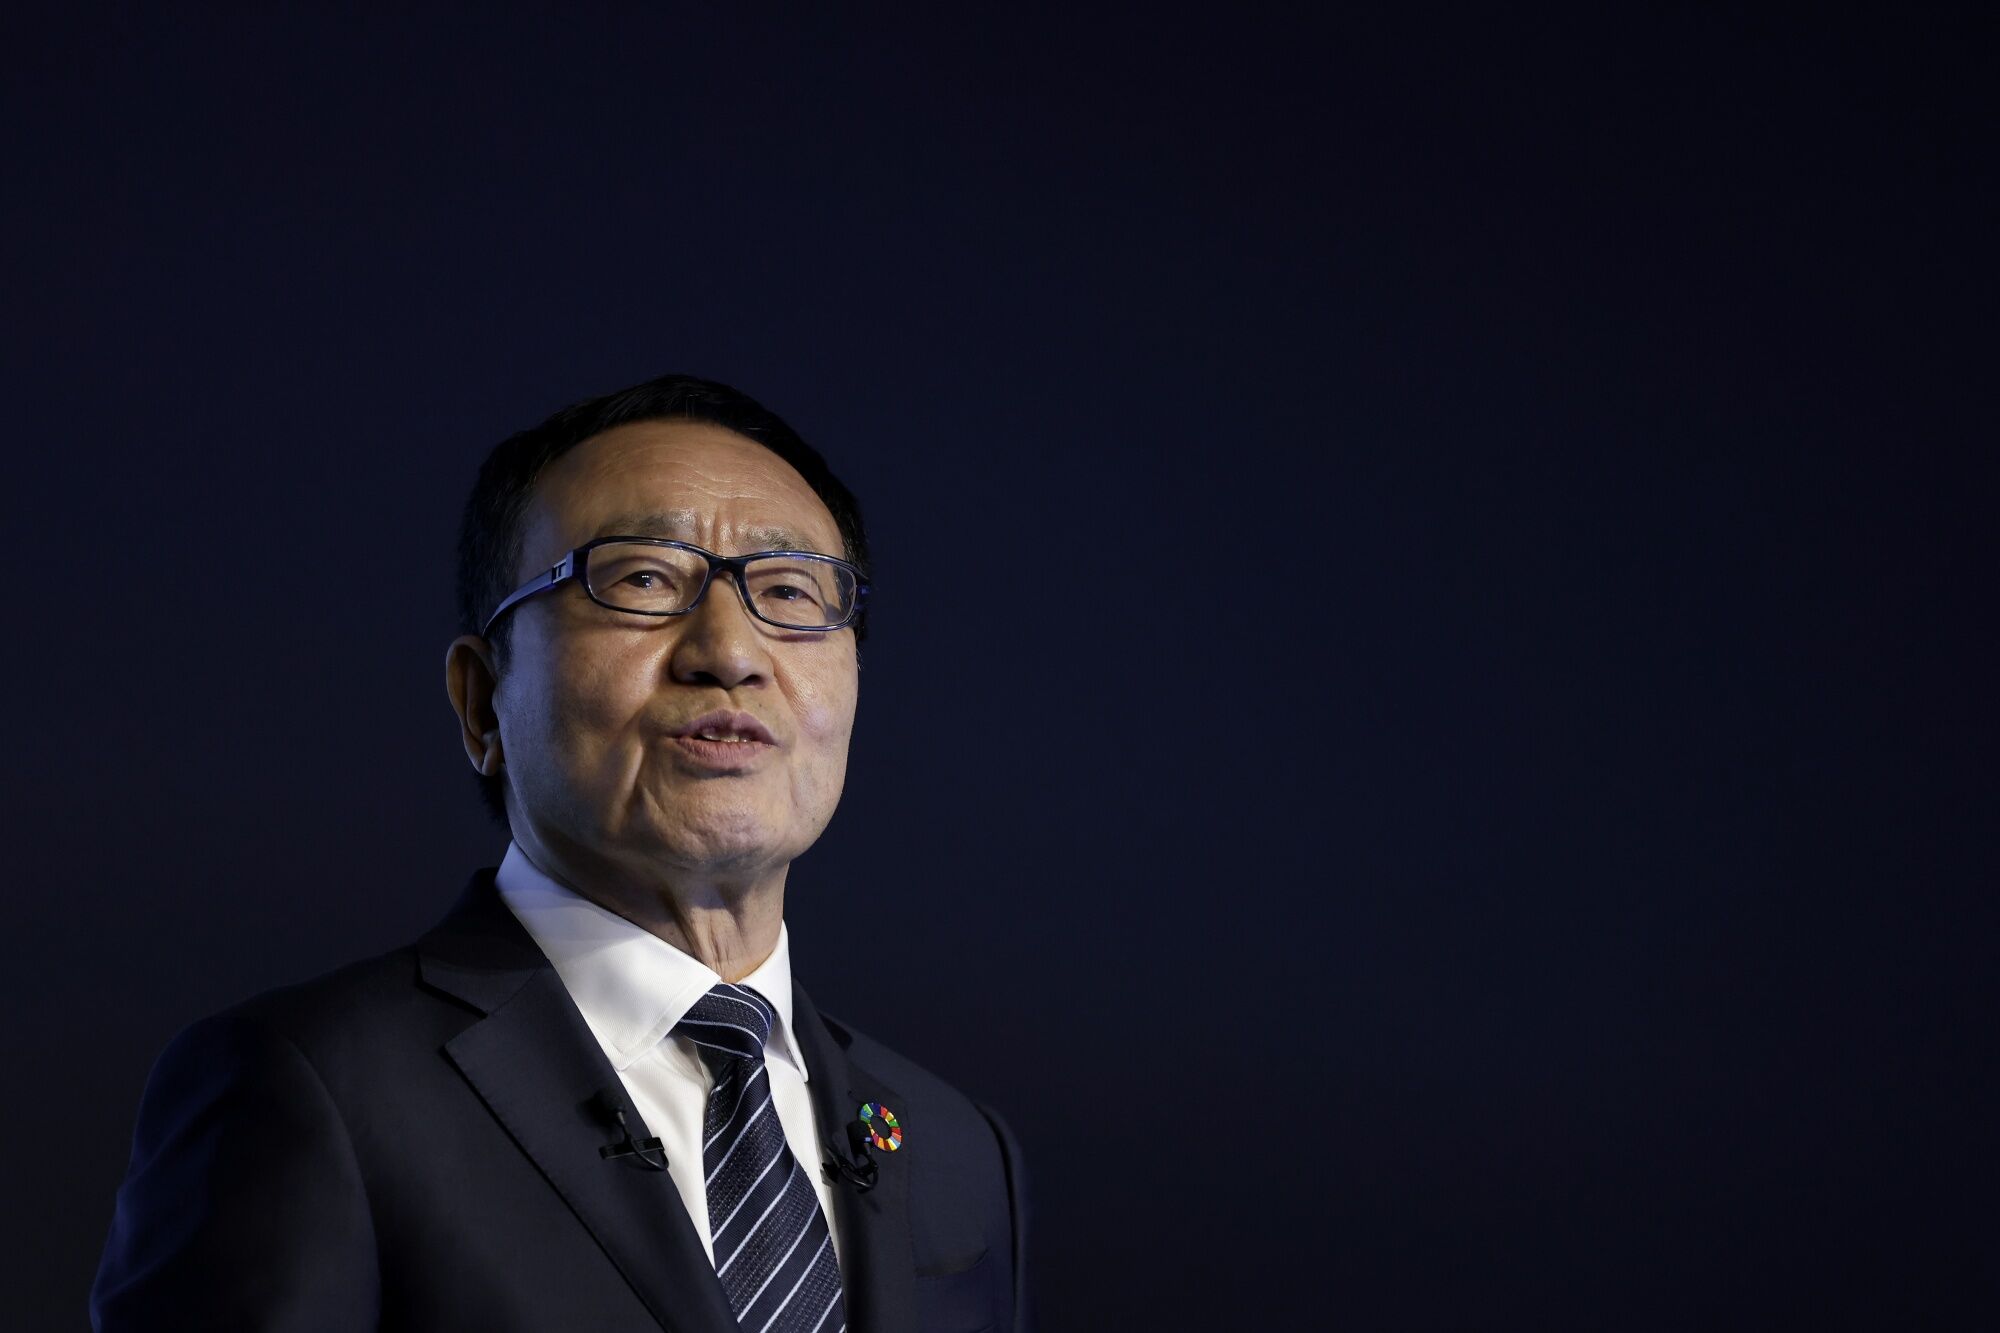 ソフトバンクの宮内謙会長が特別顧問、株主総会で取締役も退任へ